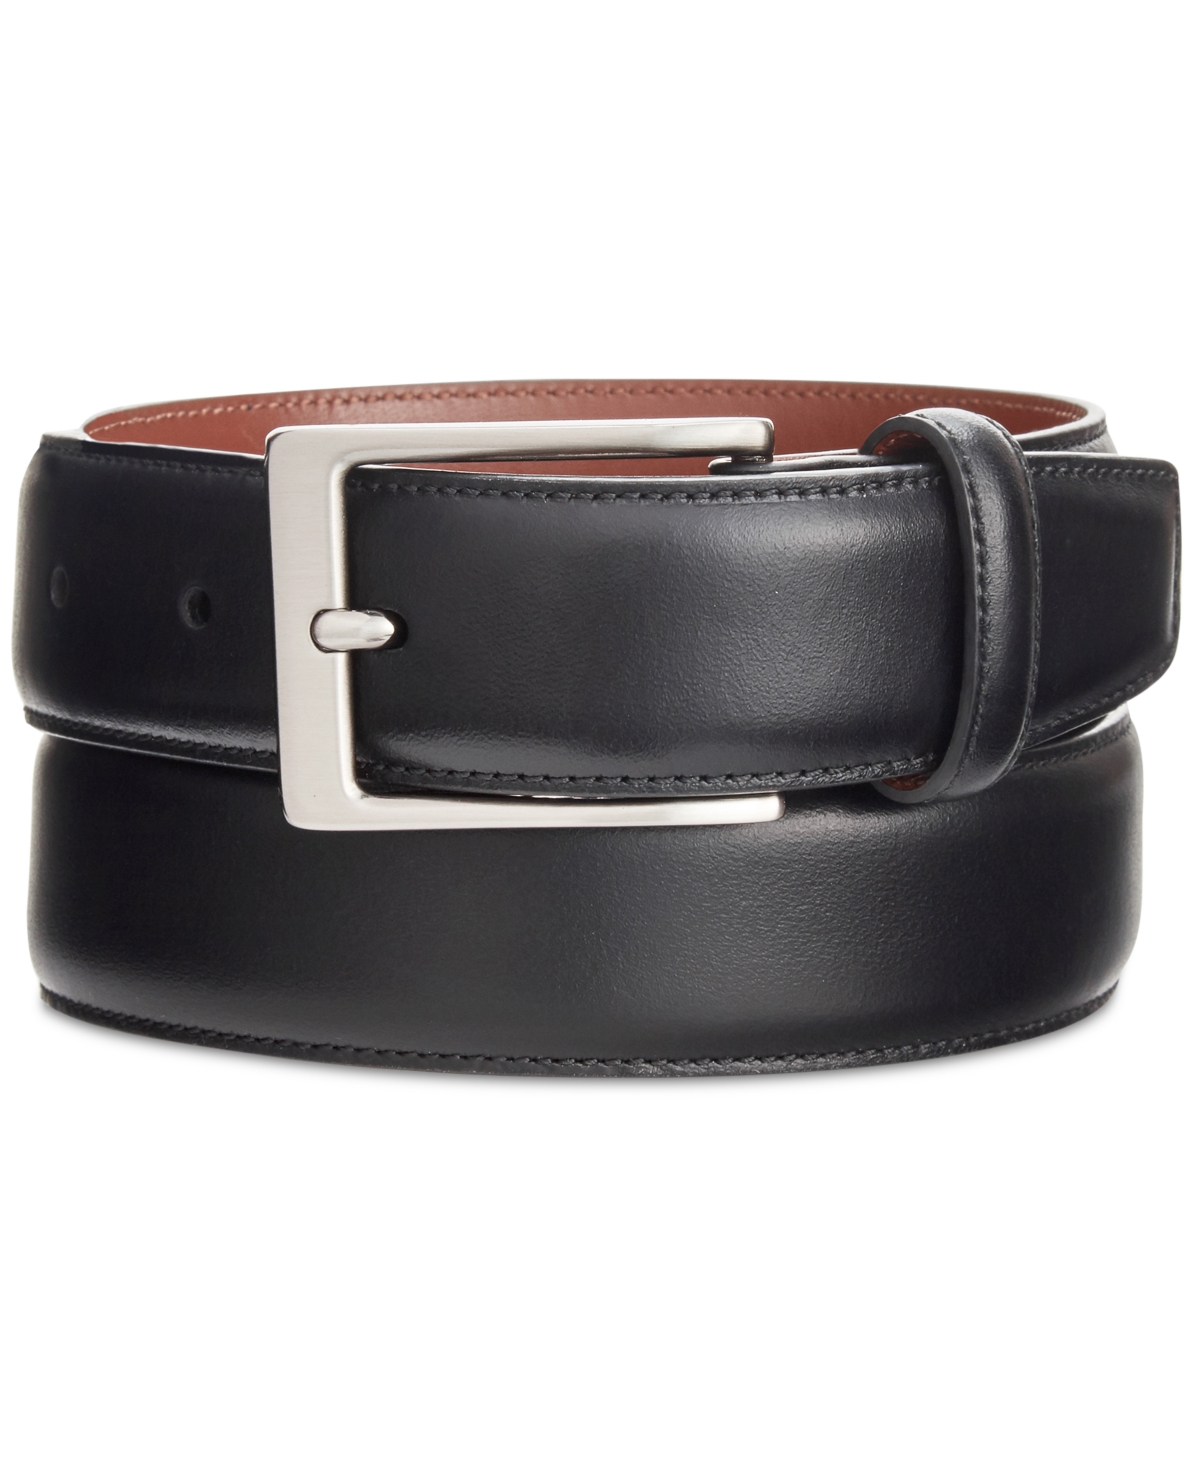 Men's Leather Dress Belt - Brown